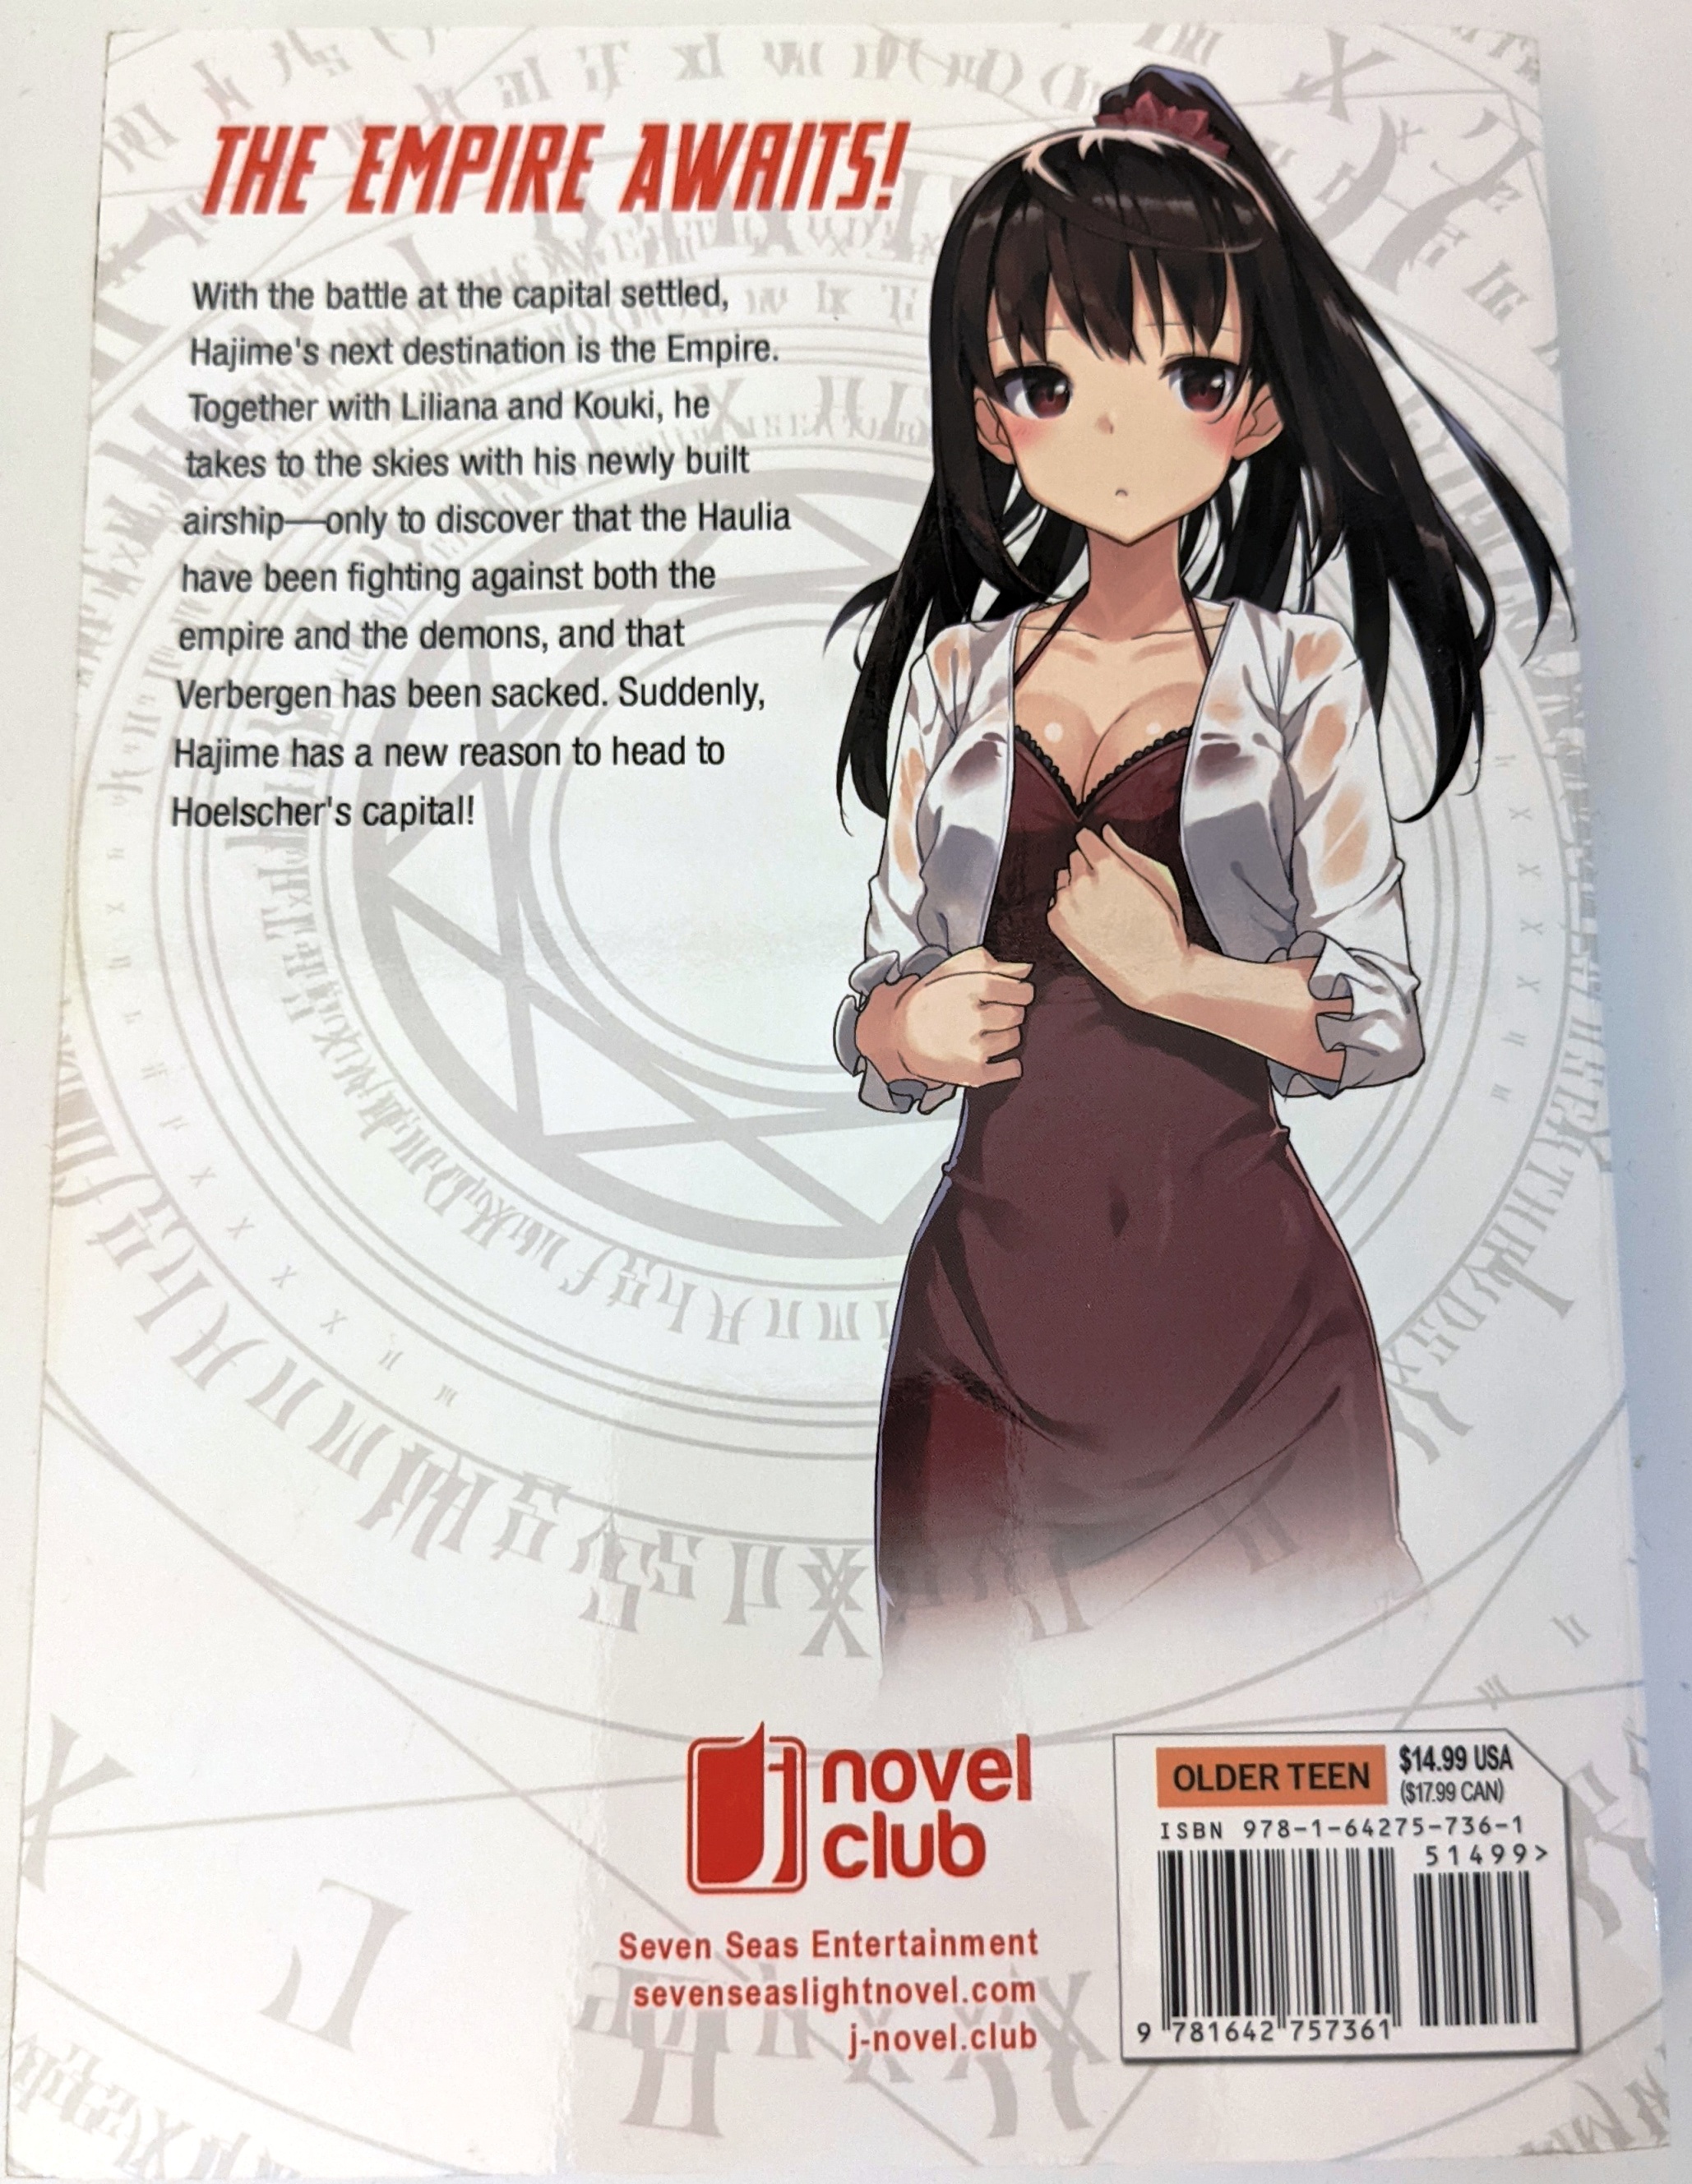  Arifureta: From Commonplace to World's Strongest (Manga) Vol.  2: 9781626928213: Shirakome, Ryo: Books